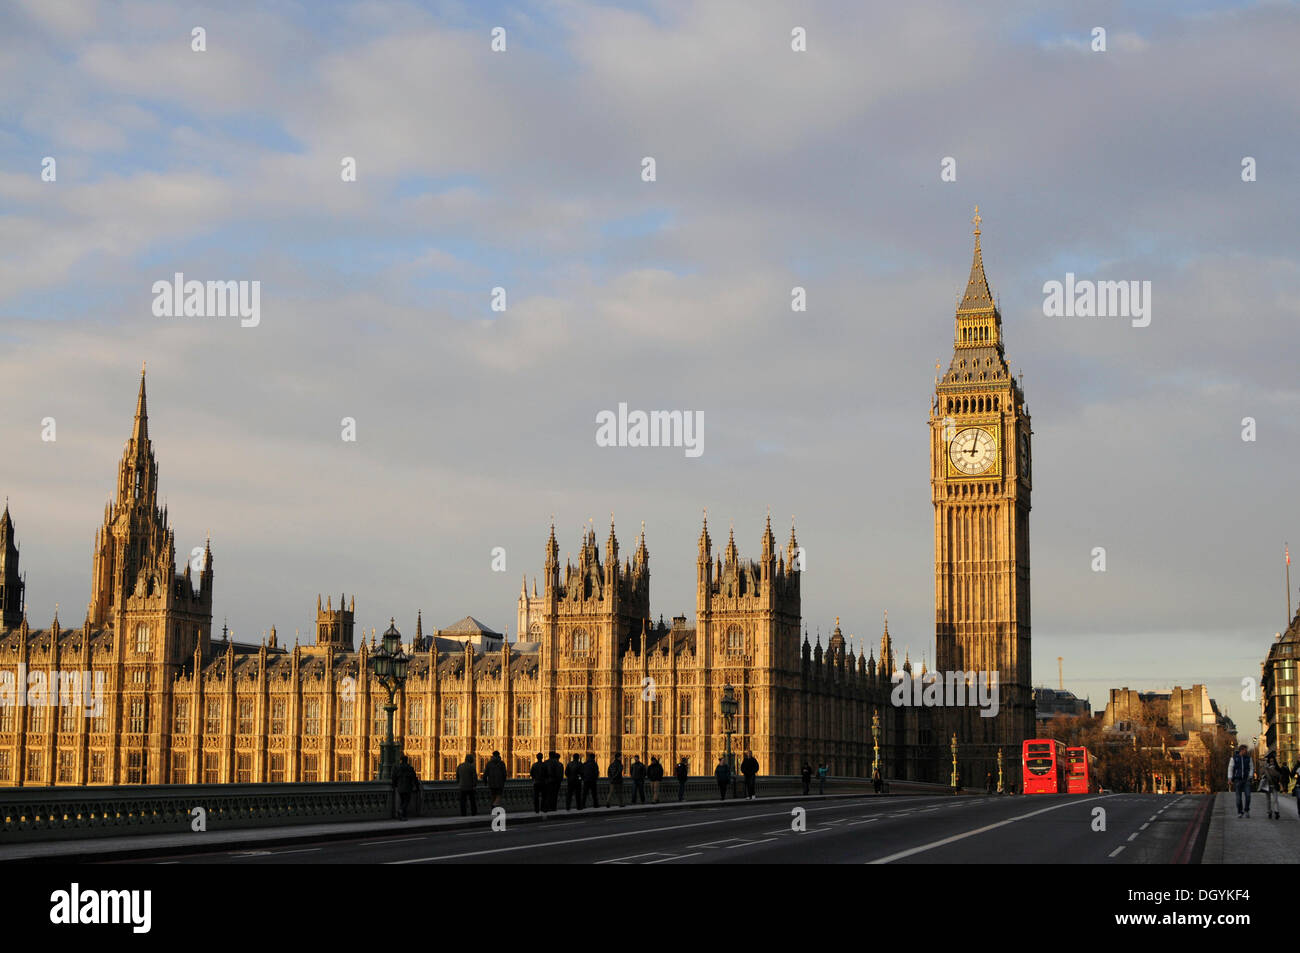 Palacio de Westminster con el Big Ben, la torre del reloj de la unesco weltkulturerbe, Westminster Bridge, Londres, Reino Unido, al sur de Inglaterra Foto de stock